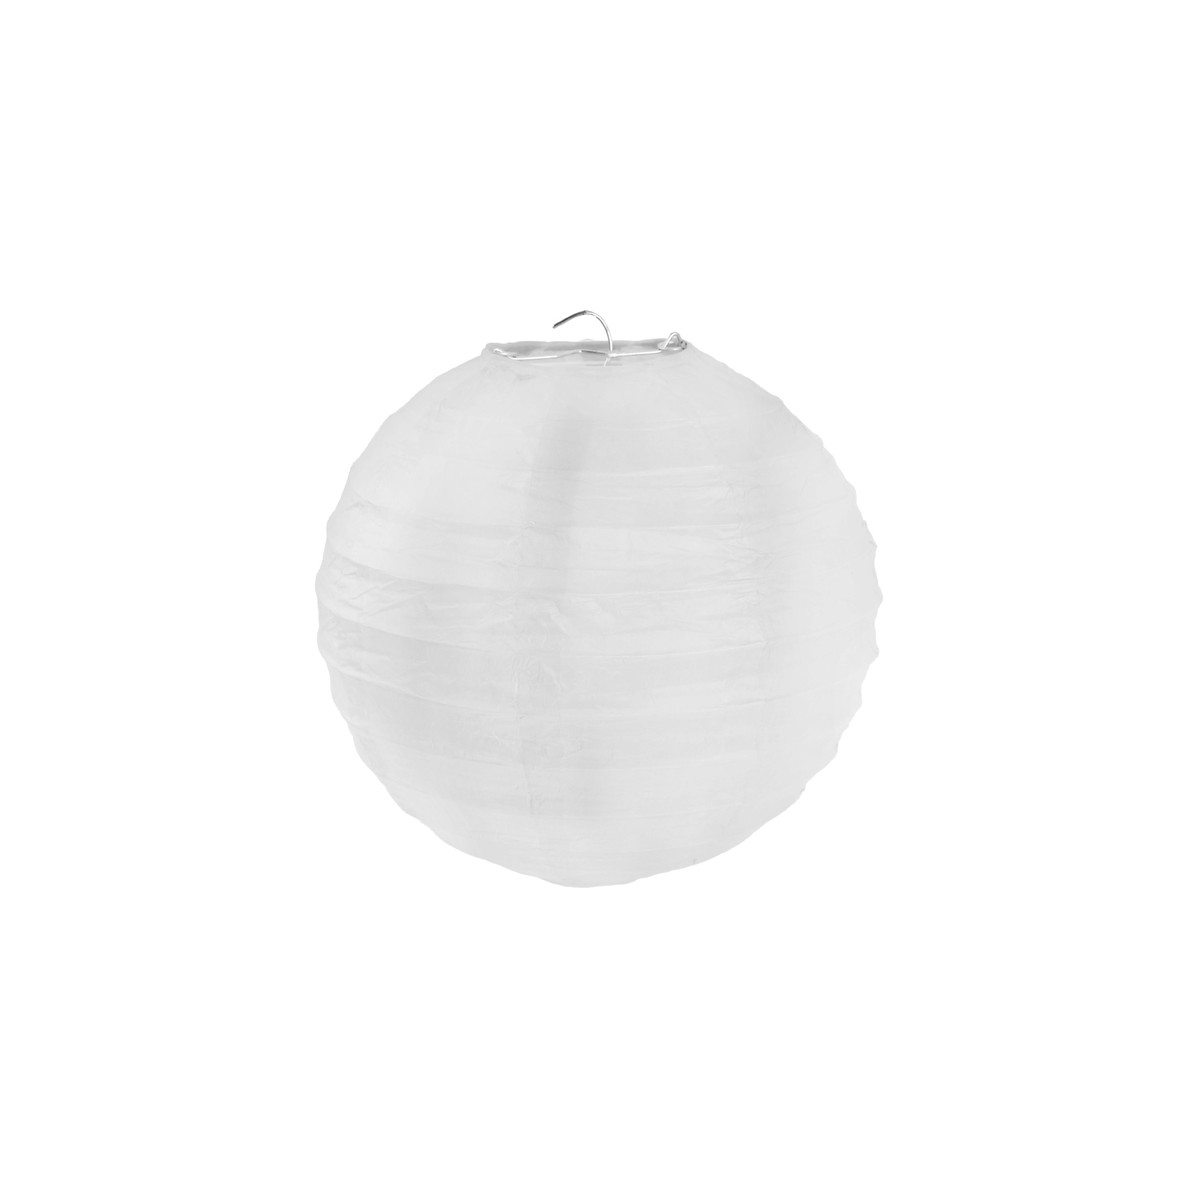 Lanterne Papier 50cm - Blanc